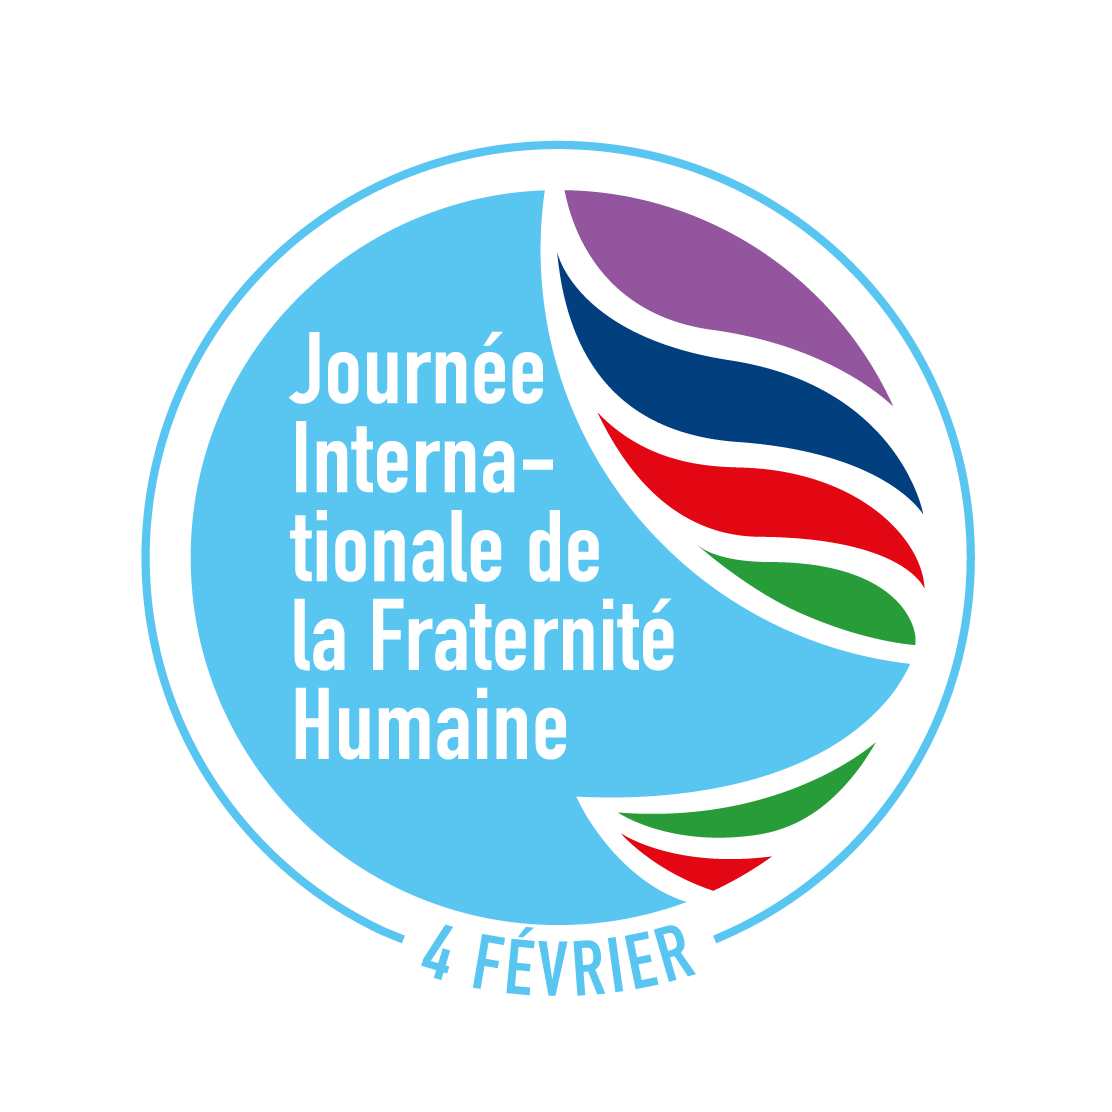 01 Logo FR Journee Internationale de la Fraternite Humaine 1